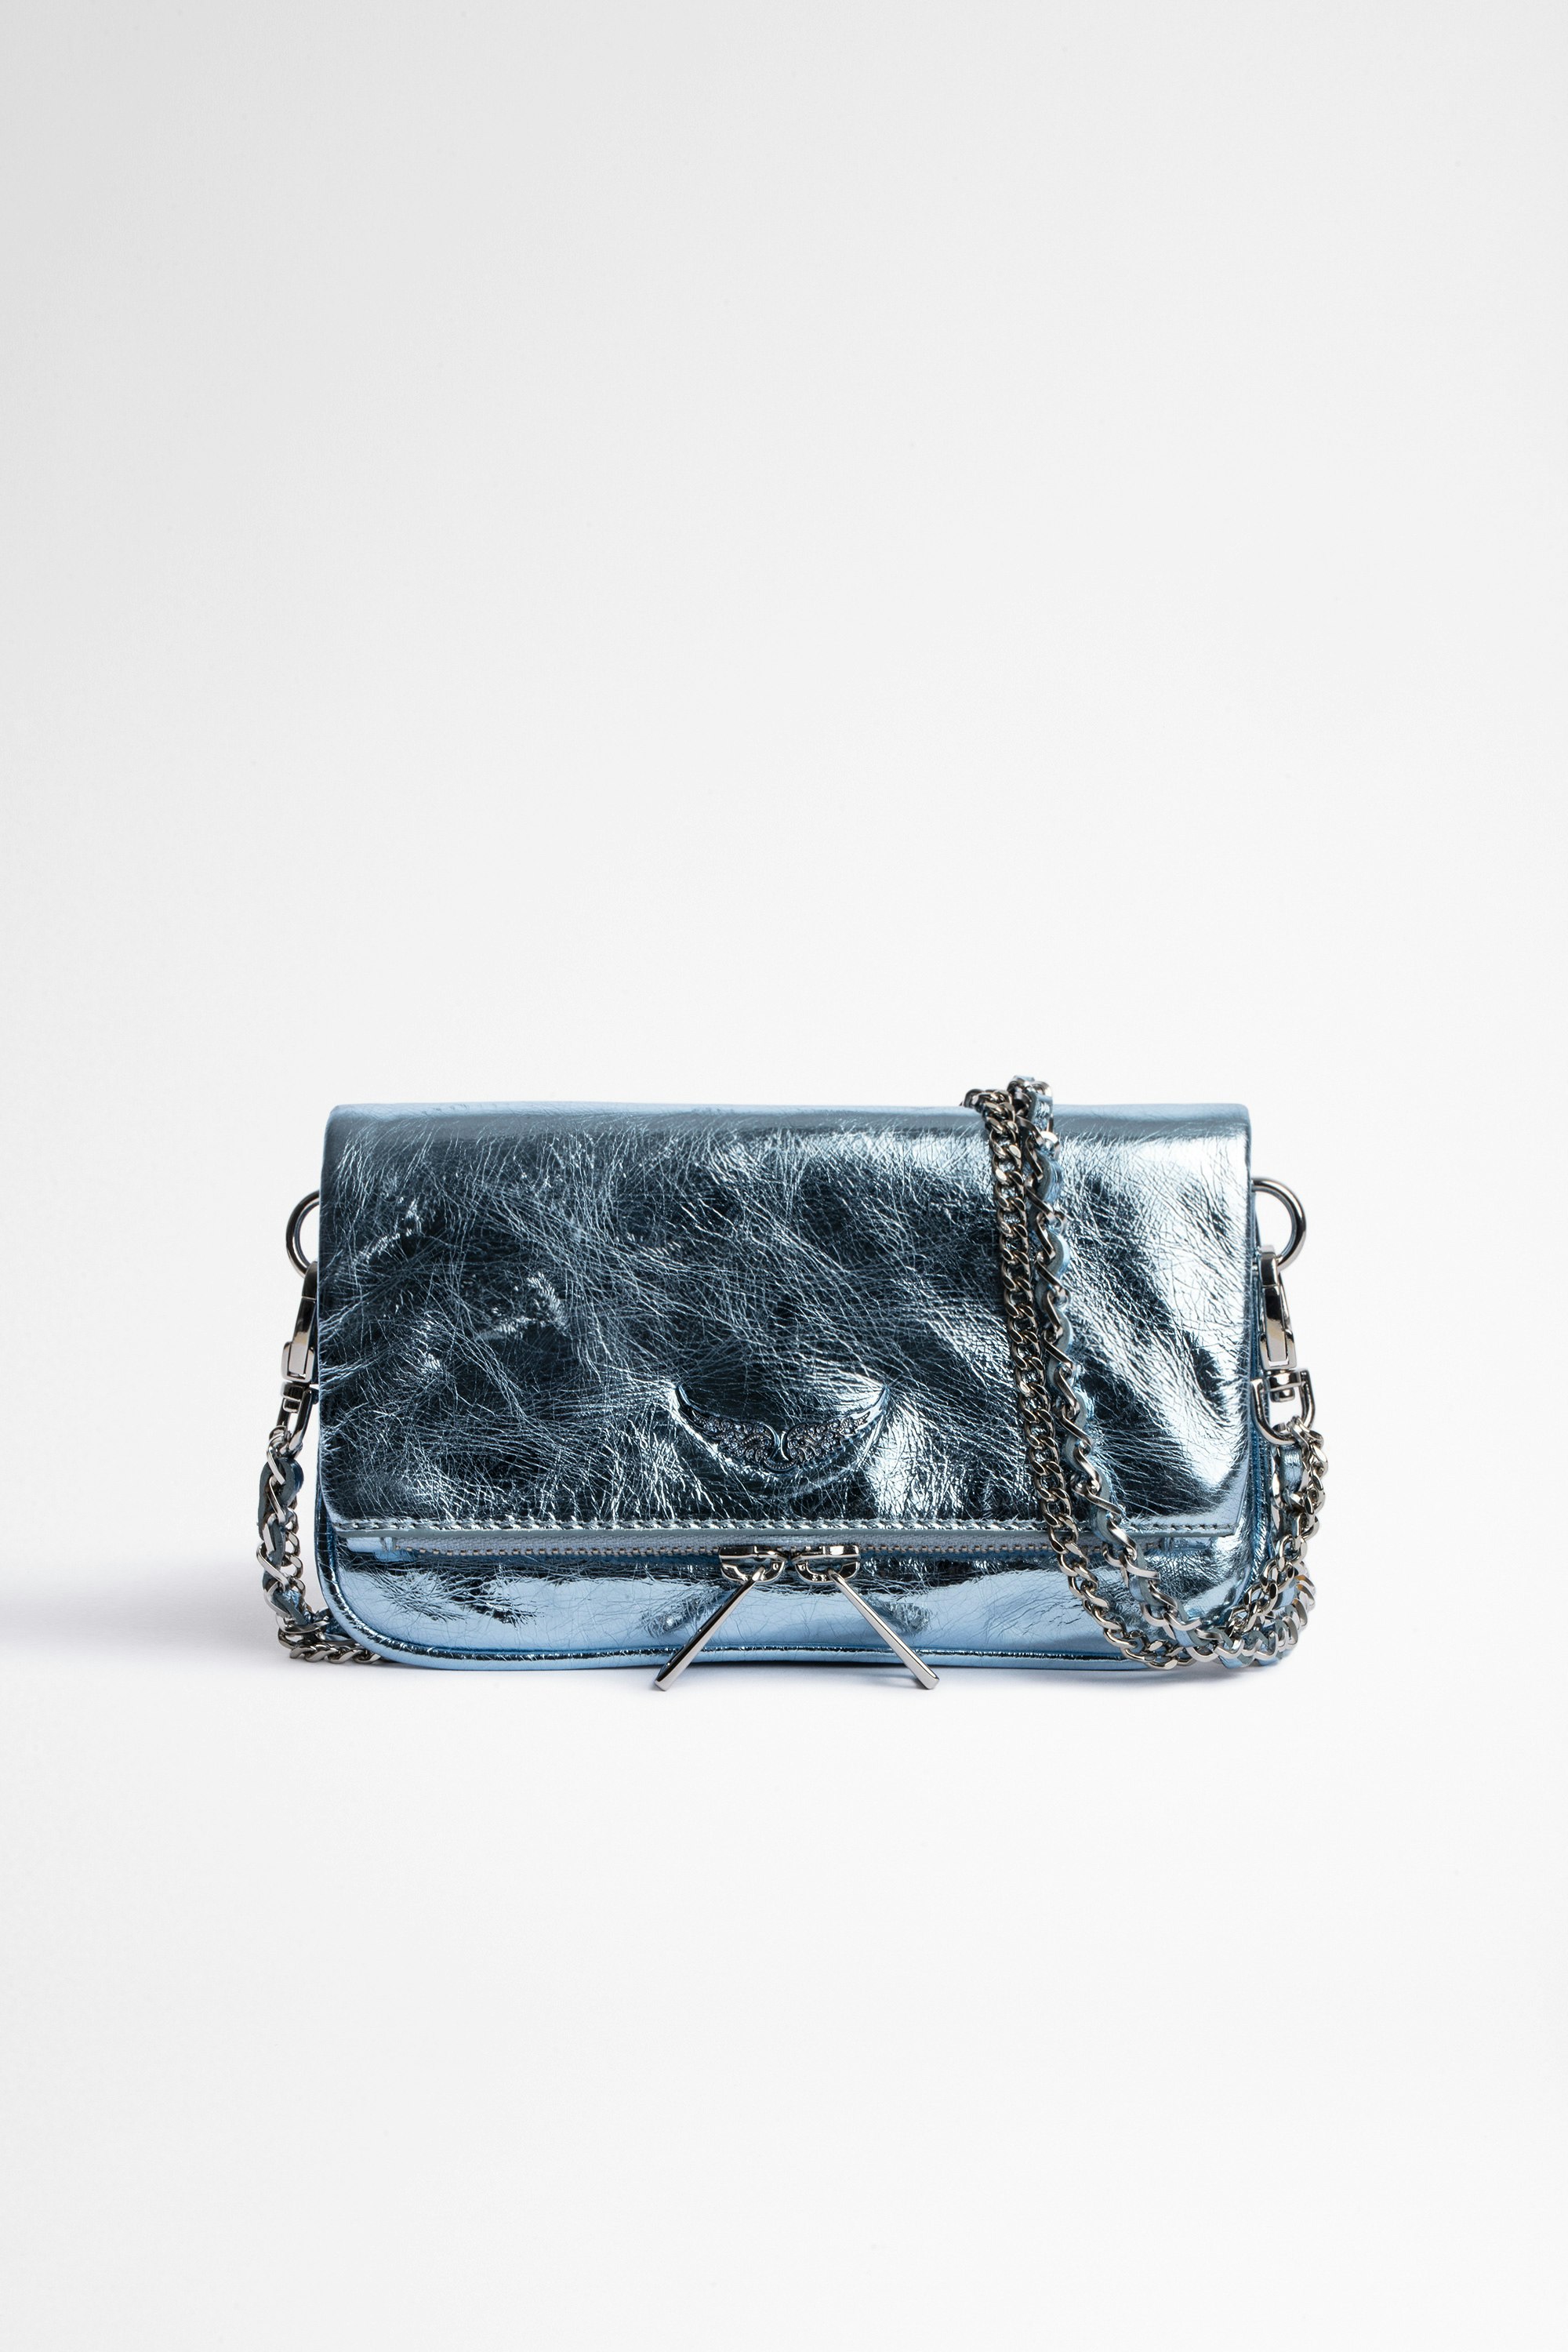 Bolso de mano Rock Nano Bolso de mano en piel metalizada azul cielo para mujer